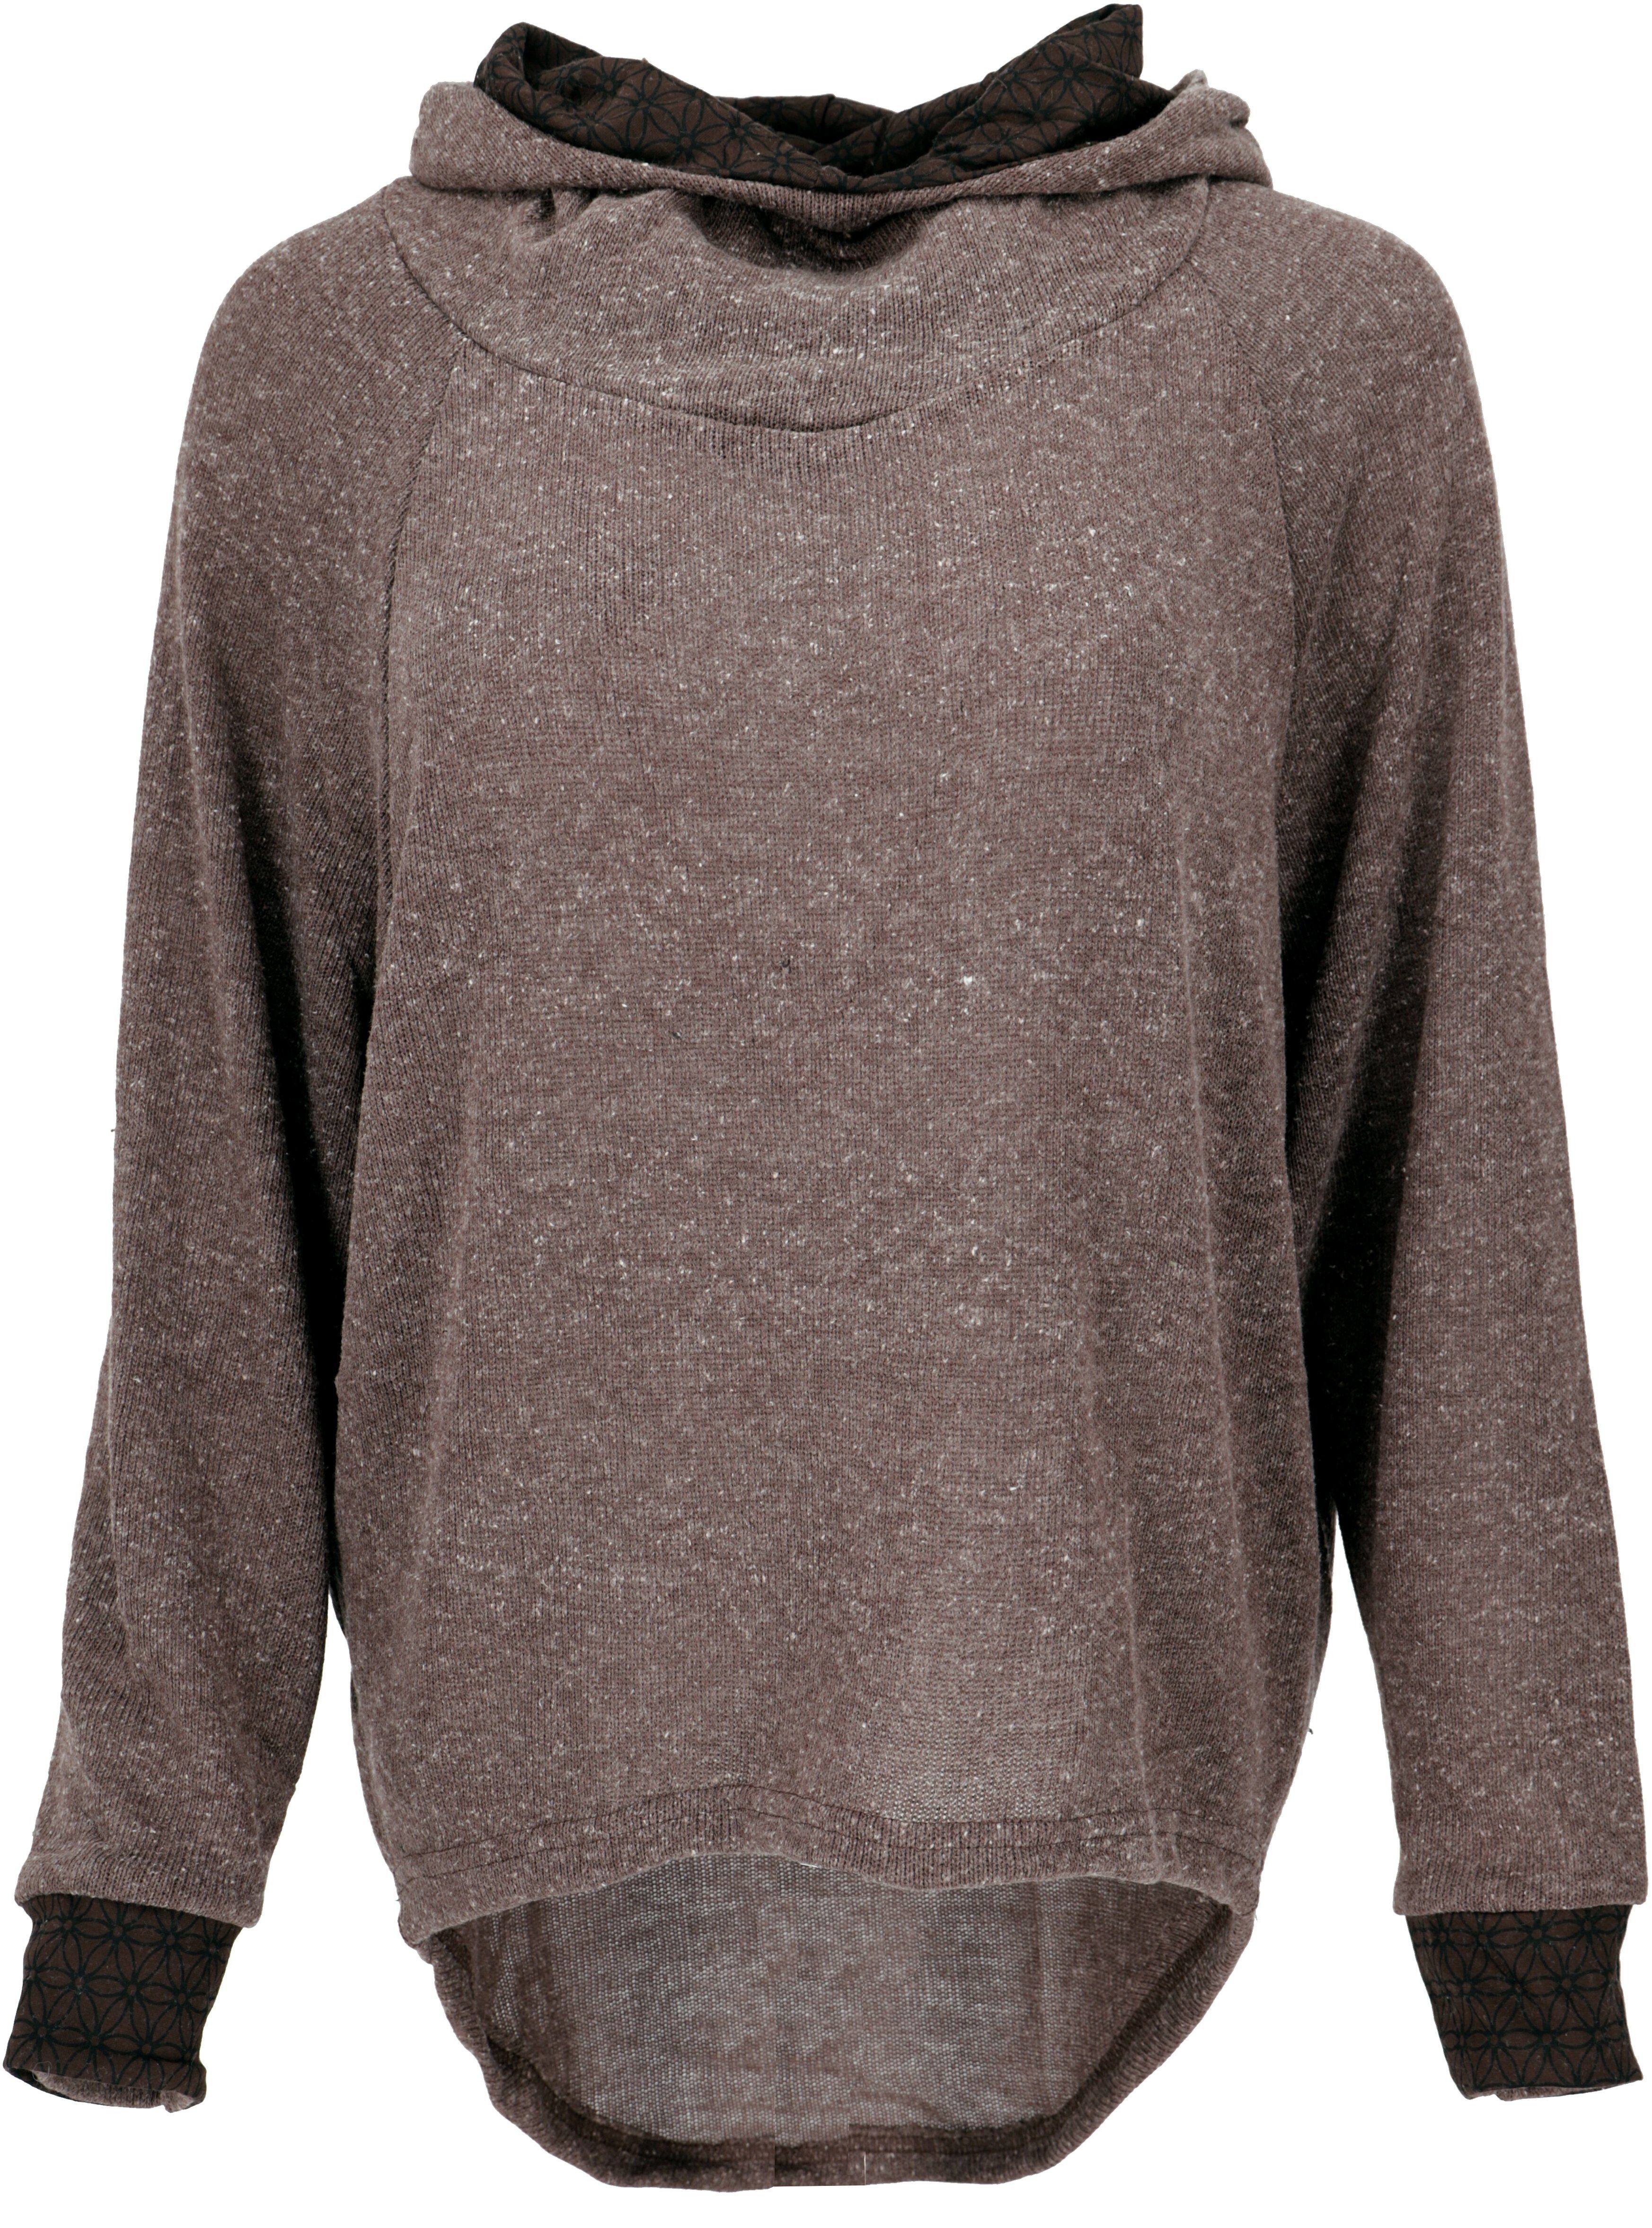 Super-Sonderpreise Guru-Shop Longsleeve Hoody, Pullover, -.. Sweatshirt, Bekleidung Kapuzenpullover braun alternative